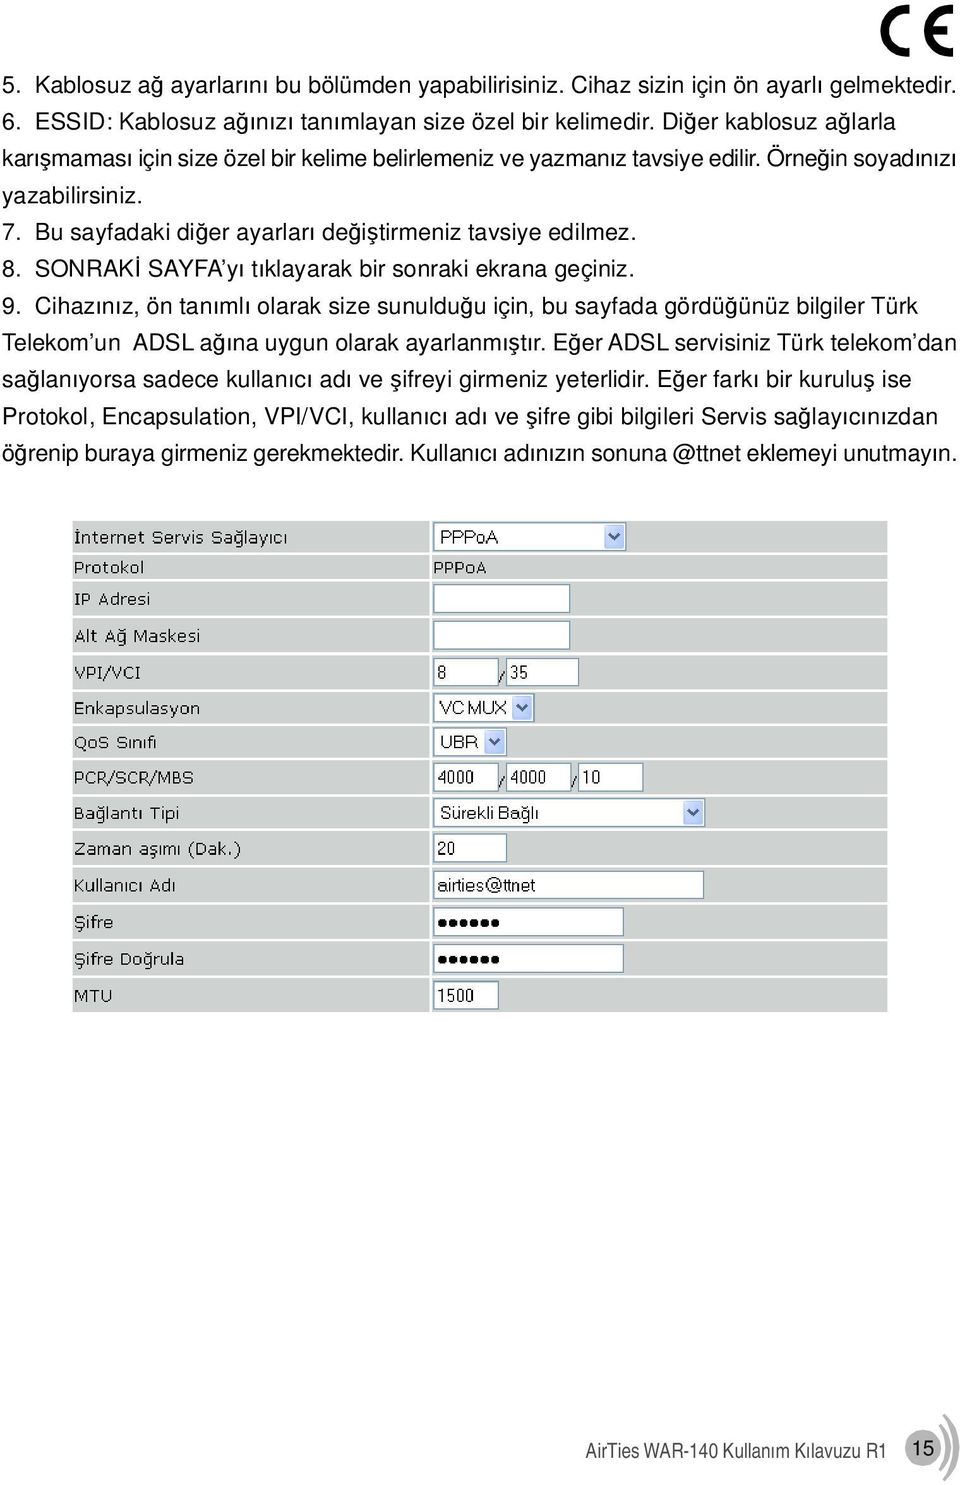 8. SONRAKİ SAYFA yı tıklayarak bir sonraki ekrana geçiniz. 9. Cihazınız, ön tanımlı olarak size sunulduğu için, bu sayfada gördüğünüz bilgiler Türk Telekom un ADSL ağına uygun olarak ayarlanmıştır.